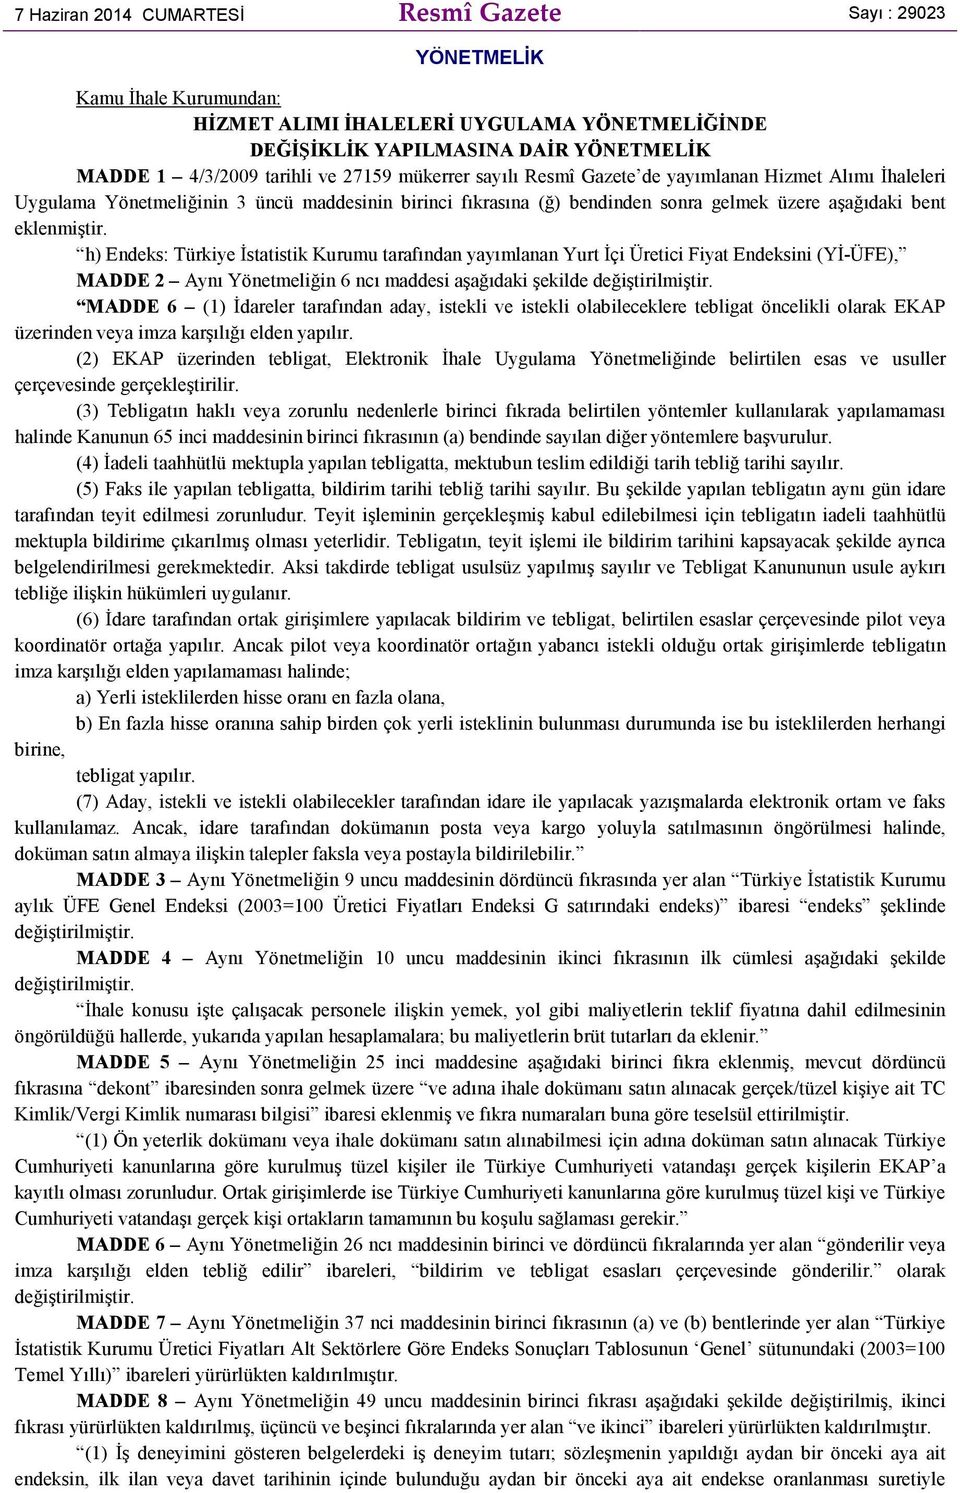 h) Endeks: Türkiye Đstatistik Kurumu tarafından yayımlanan Yurt Đçi Üretici Fiyat Endeksini (YĐ-ÜFE), MADDE 2 Aynı Yönetmeliğin 6 ncı maddesi aşağıdaki şekilde değiştirilmiştir.